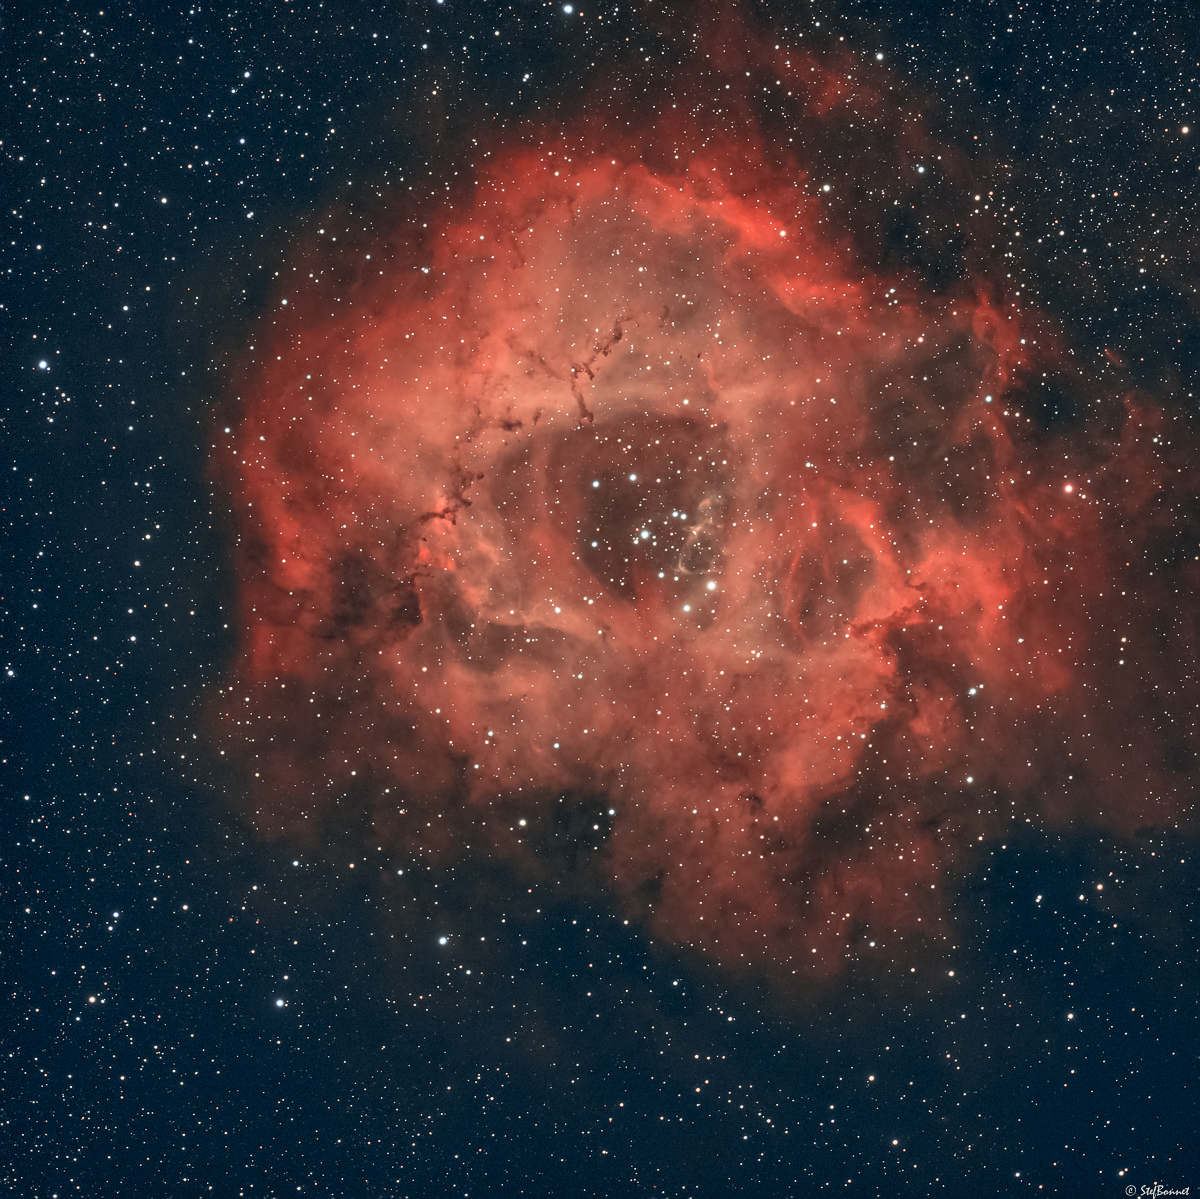 61d49cfbbf5ee_Rosette-NGC2239-20220101-Web.jpg.c2cdd3c5dc057aea945ea34c2e4cb6d8.jpg